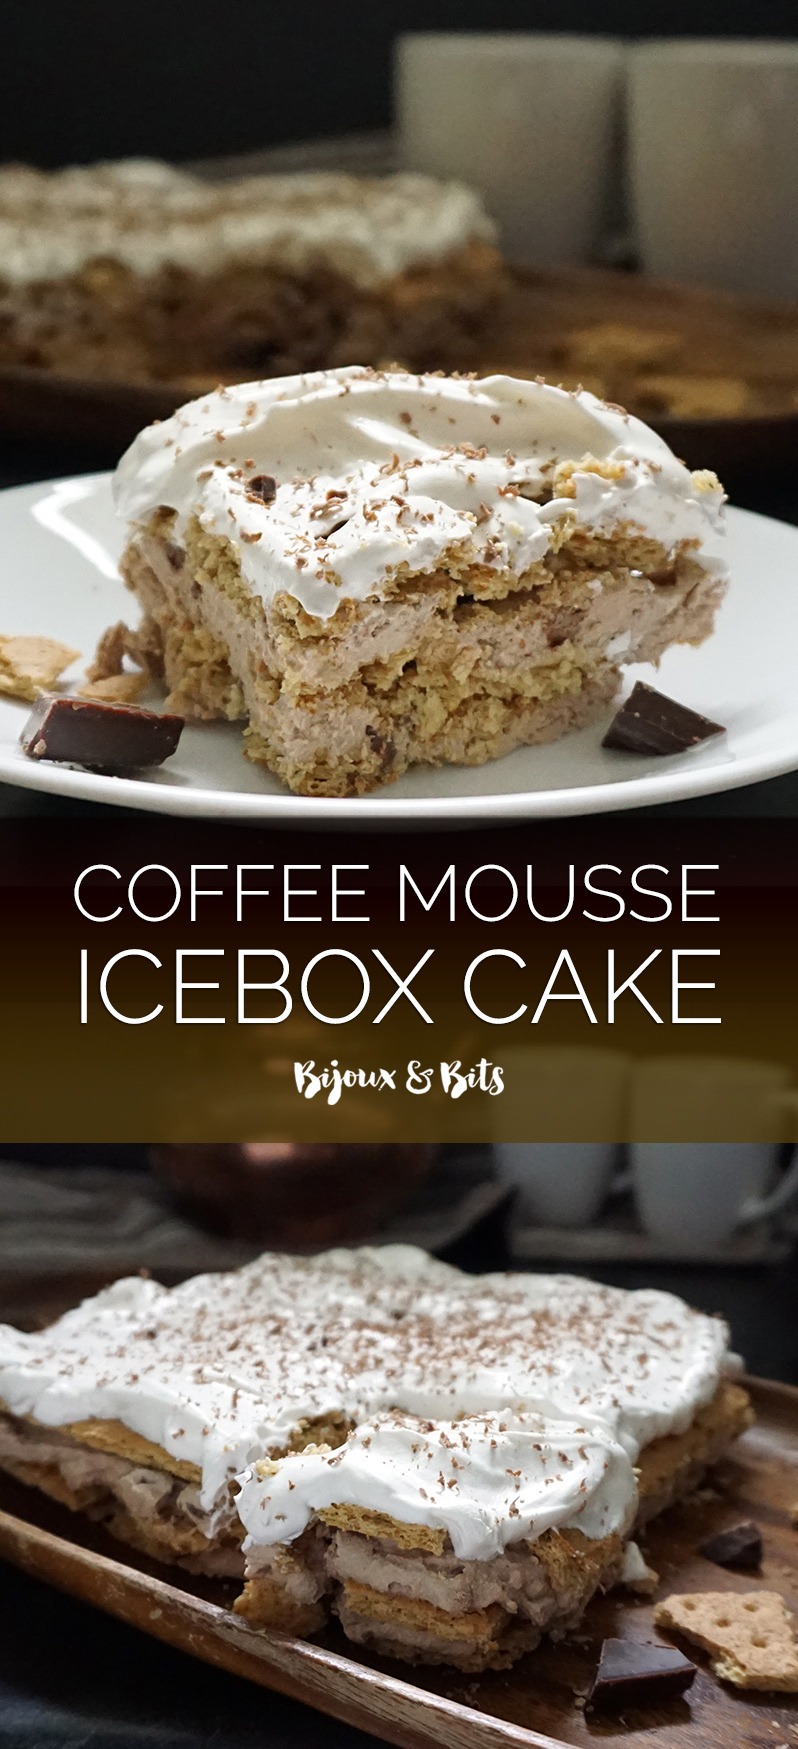 Coffee mousse icebox cake from @bijouxandbits #iceboxcake #mousse